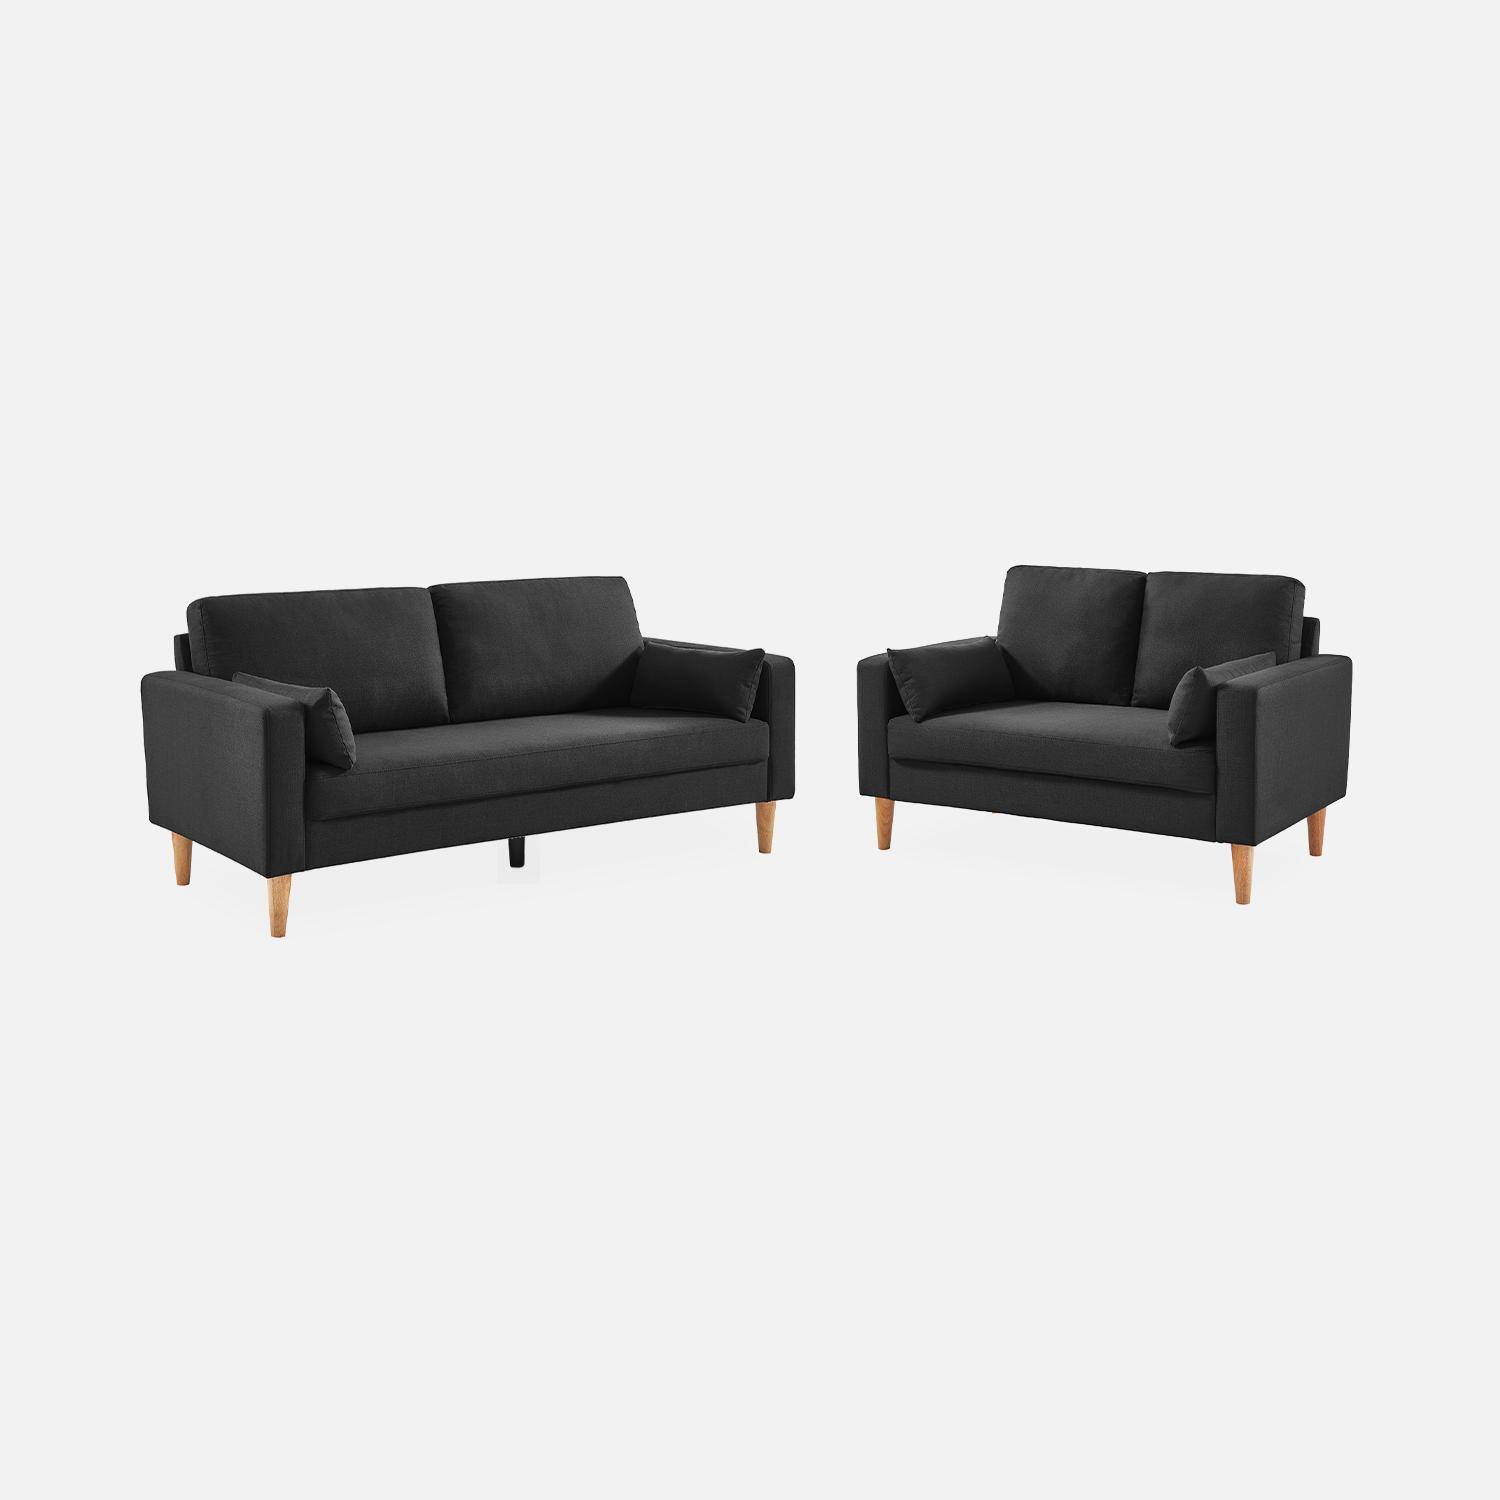 Donkergrijze stoffen driezits sofa - Bjorn - 3-zits bank met houten poten, scandinavische stijl   Photo5